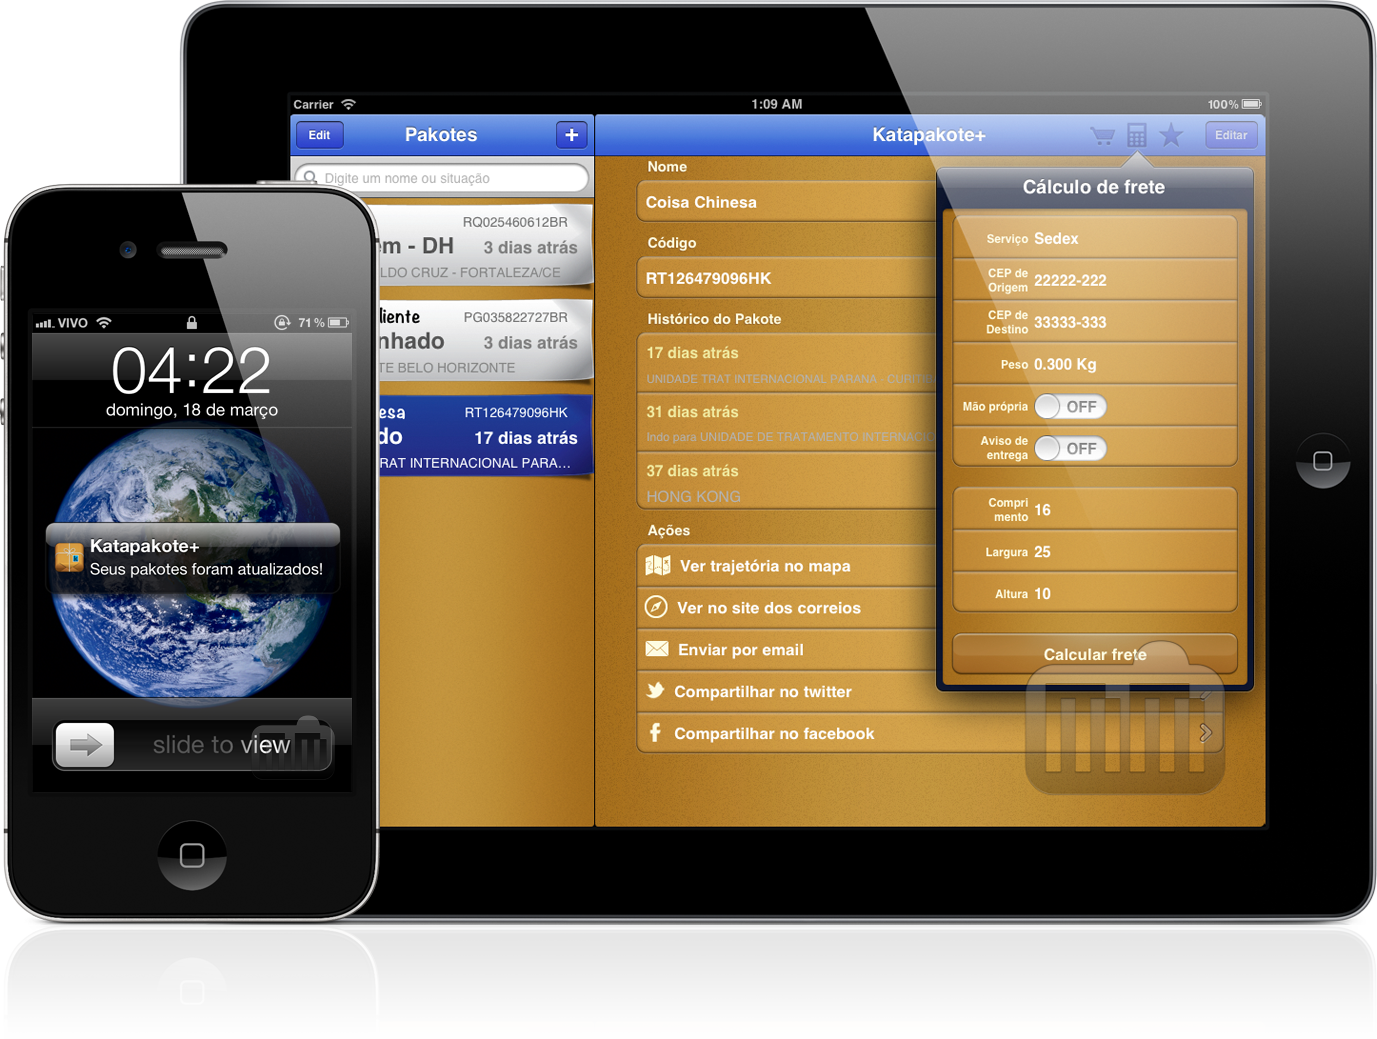 Katapakote+ 2.0 no iPhone e iPad